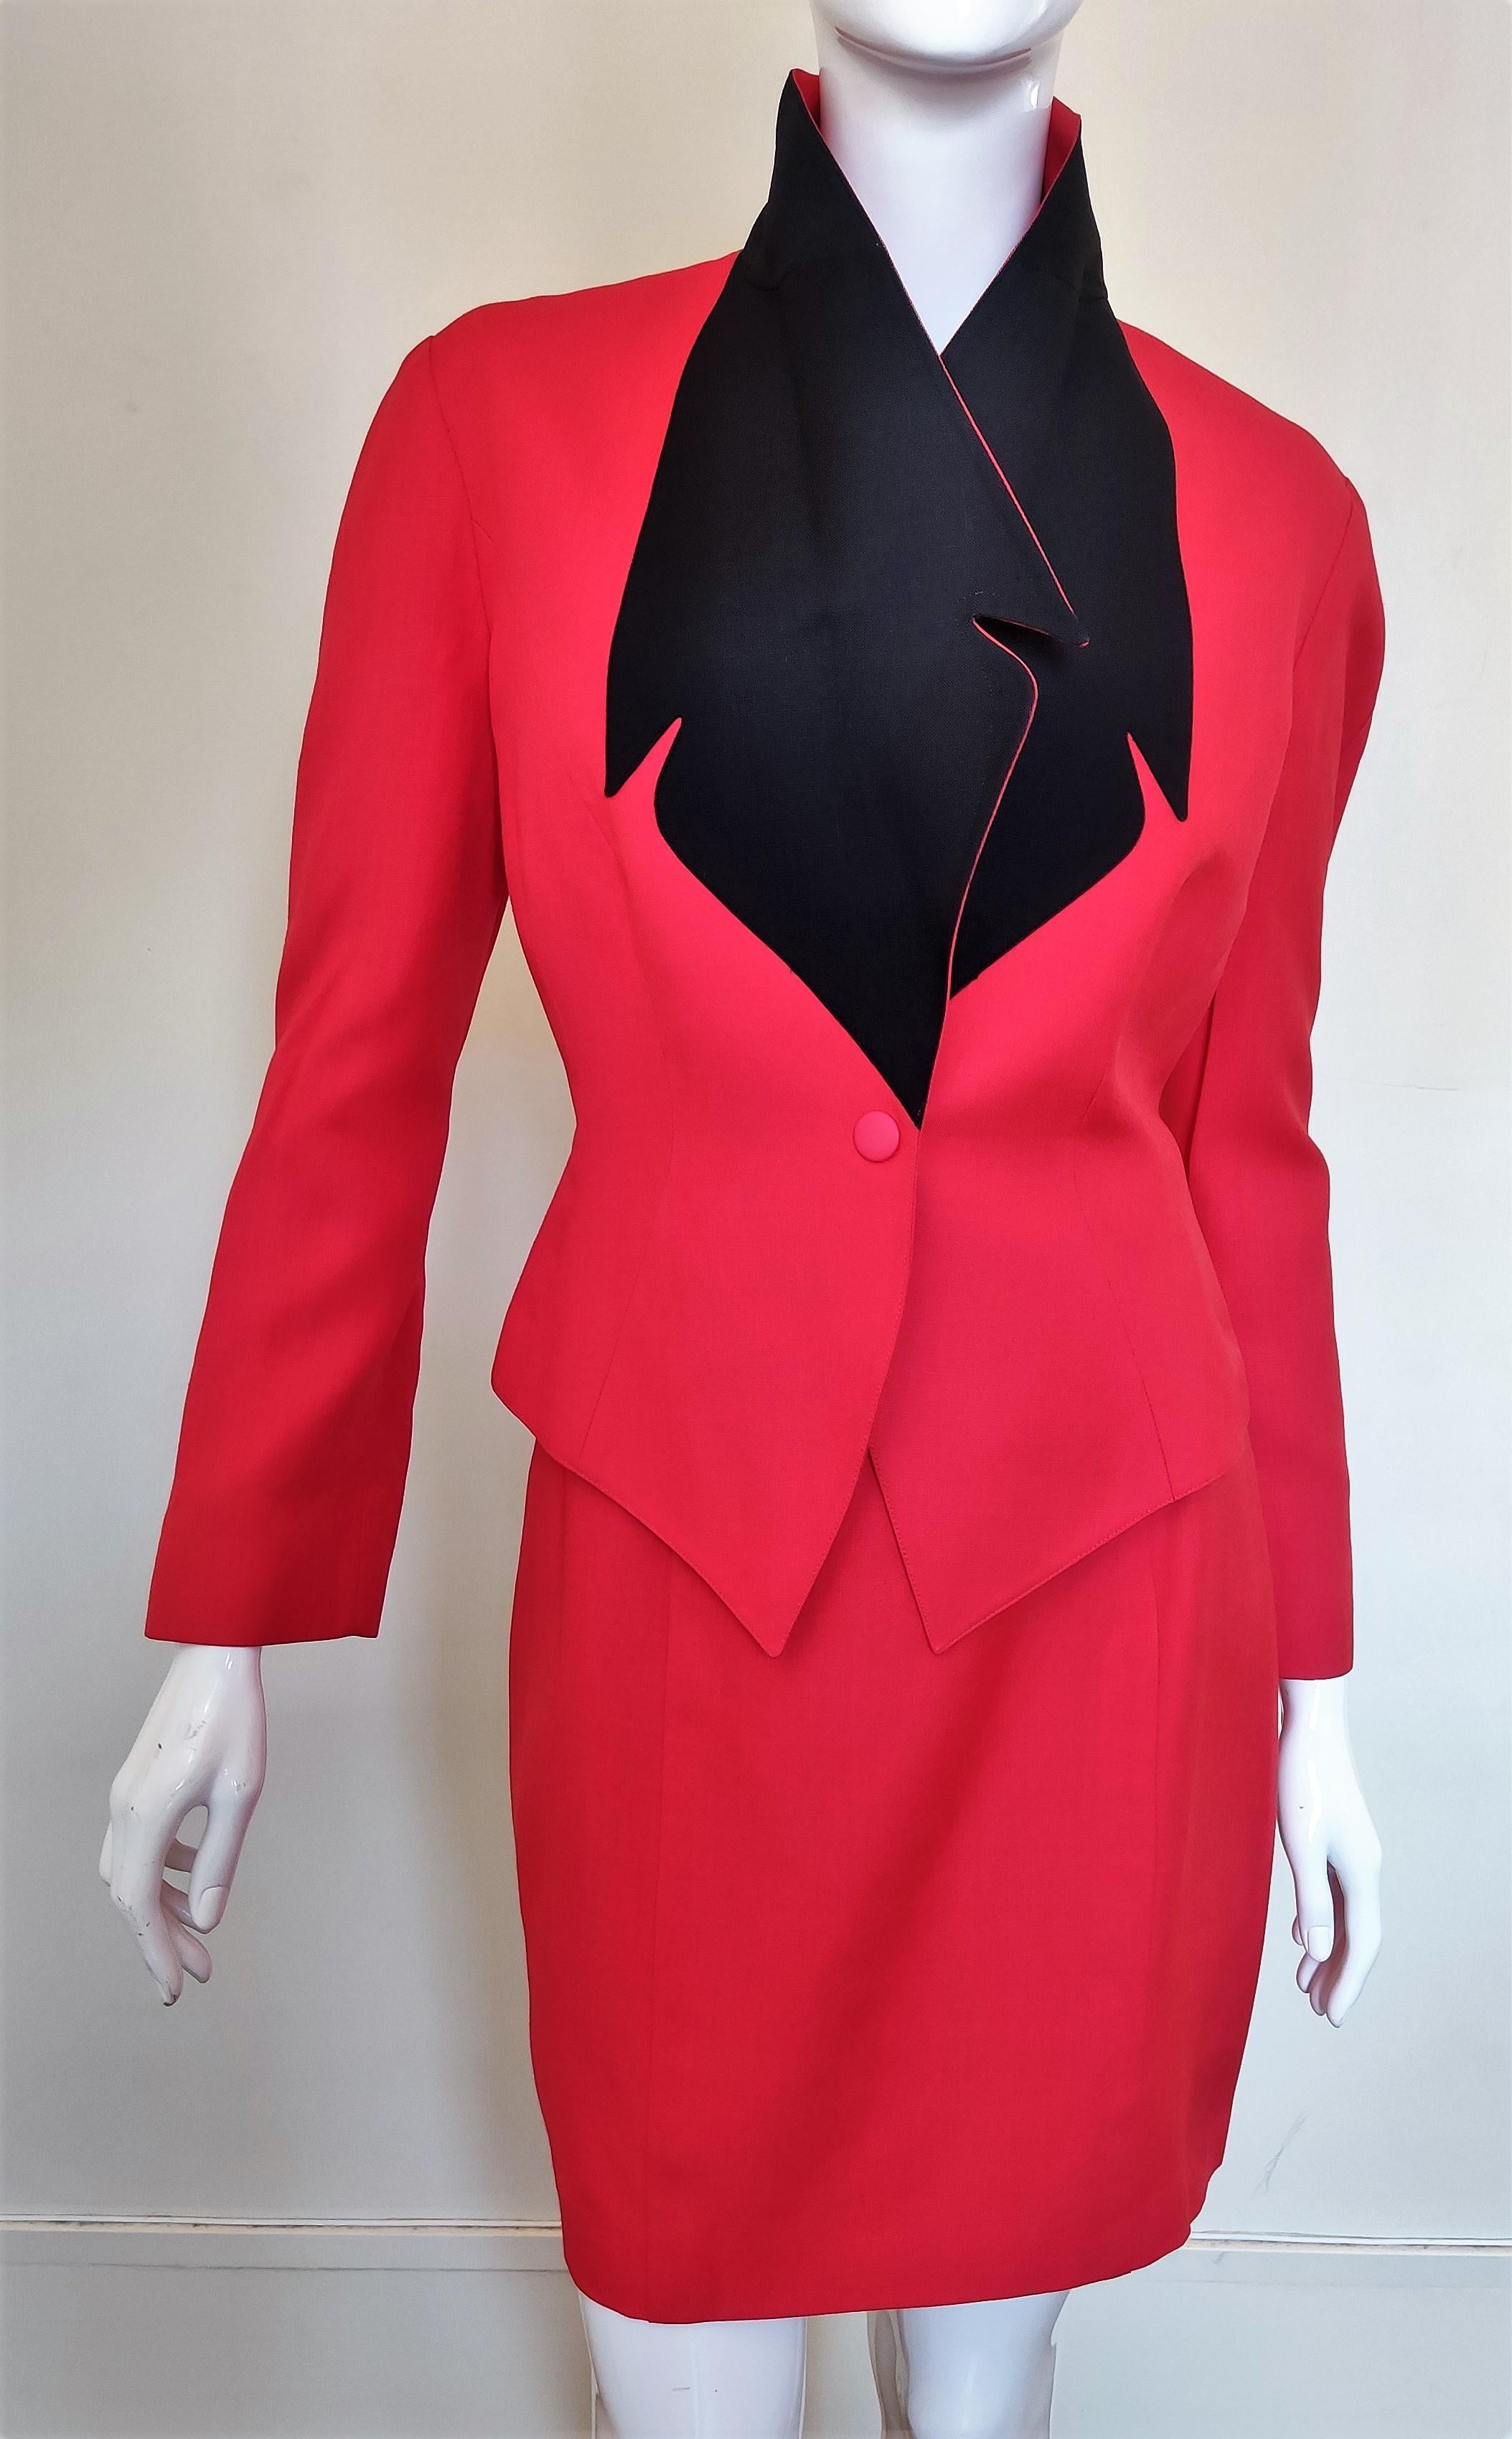 Rouge Thierry Mugler - Costume robe couture arc-en-ciel rouge, noire et à taille Vampire Wasp en vente